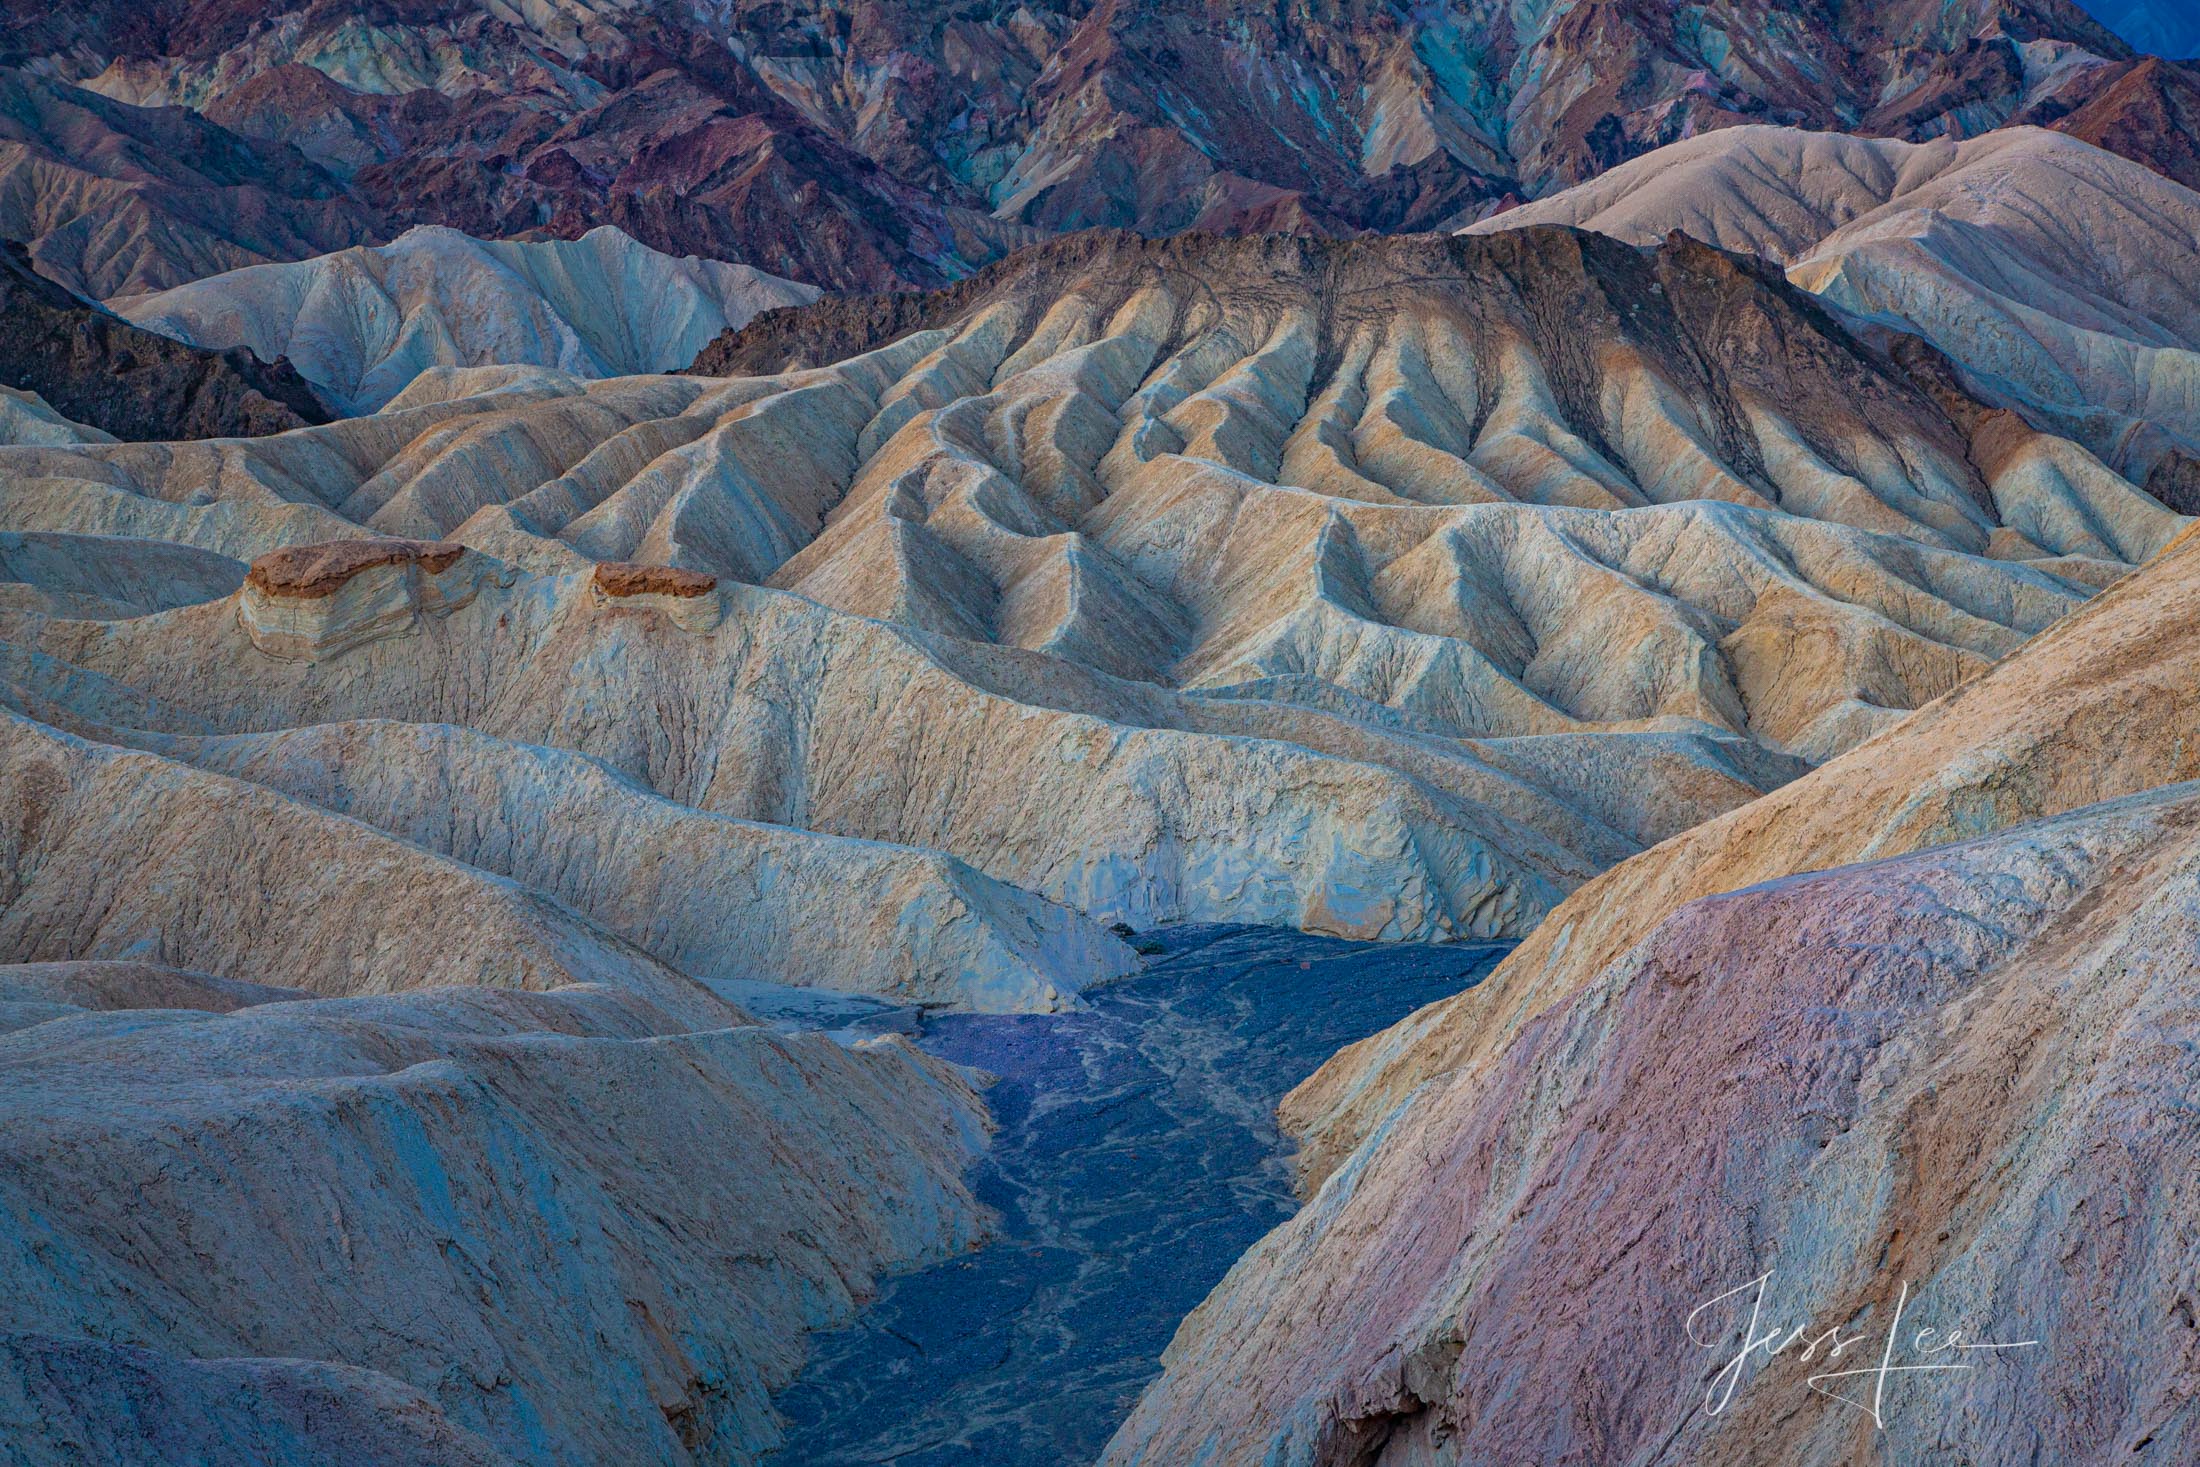 Baked Landscape, Death Valley